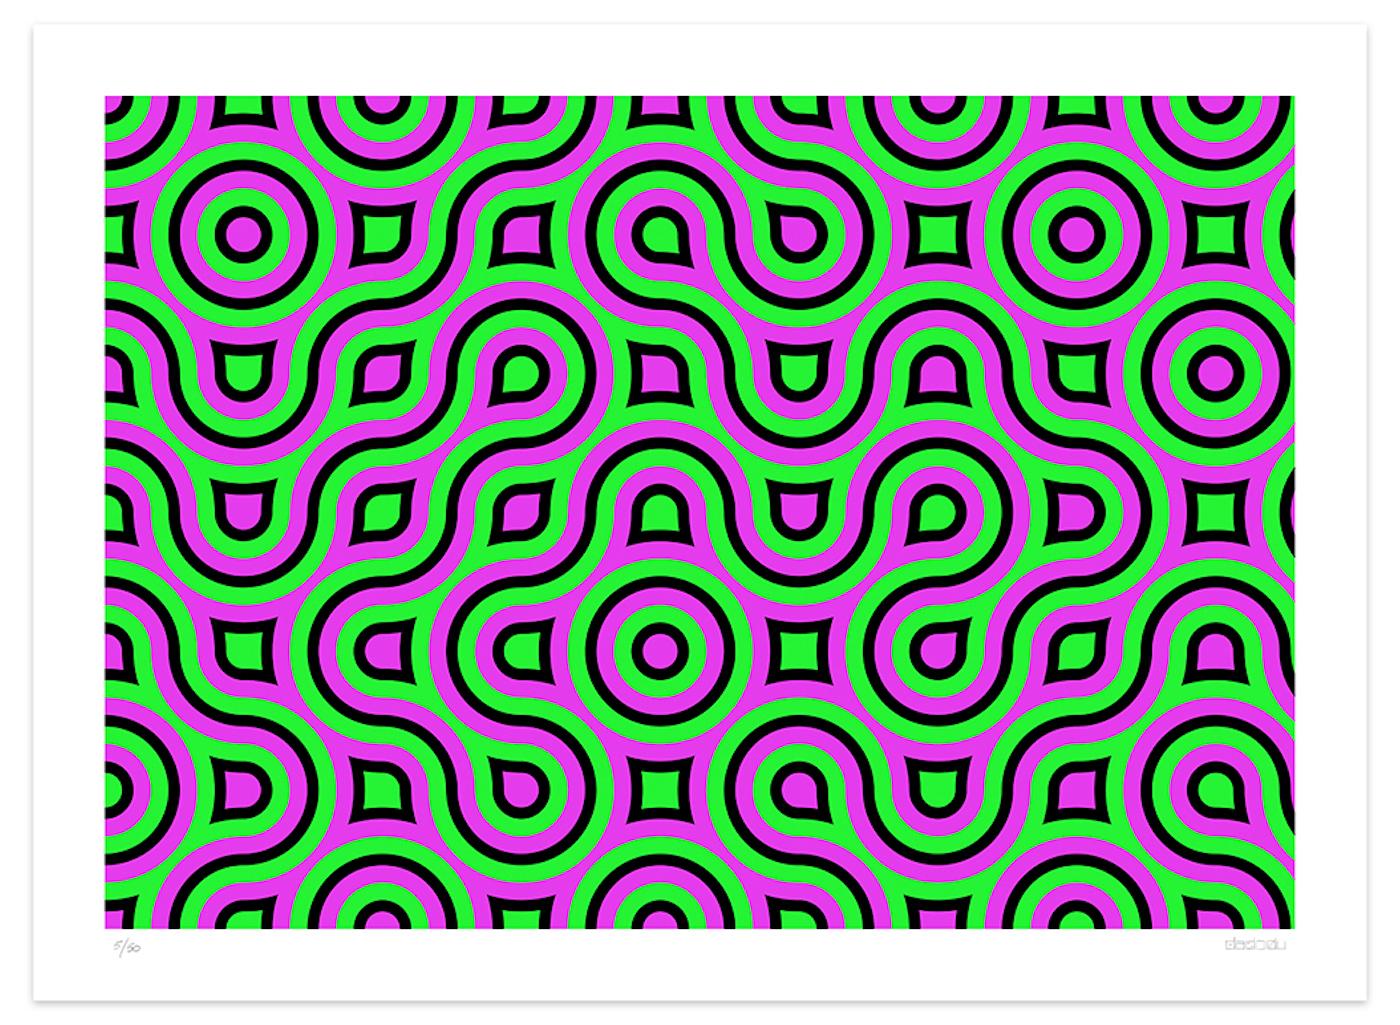 Dimensions de l'image 49 x 70 cm.

Aorta est une incroyable impression giclée réalisée par l'artiste contemporain Dadodu en 2008.

Cette œuvre d'art originale représente des chemins verts et fuchsia avec un contour noir.

Signé à la main en bas à